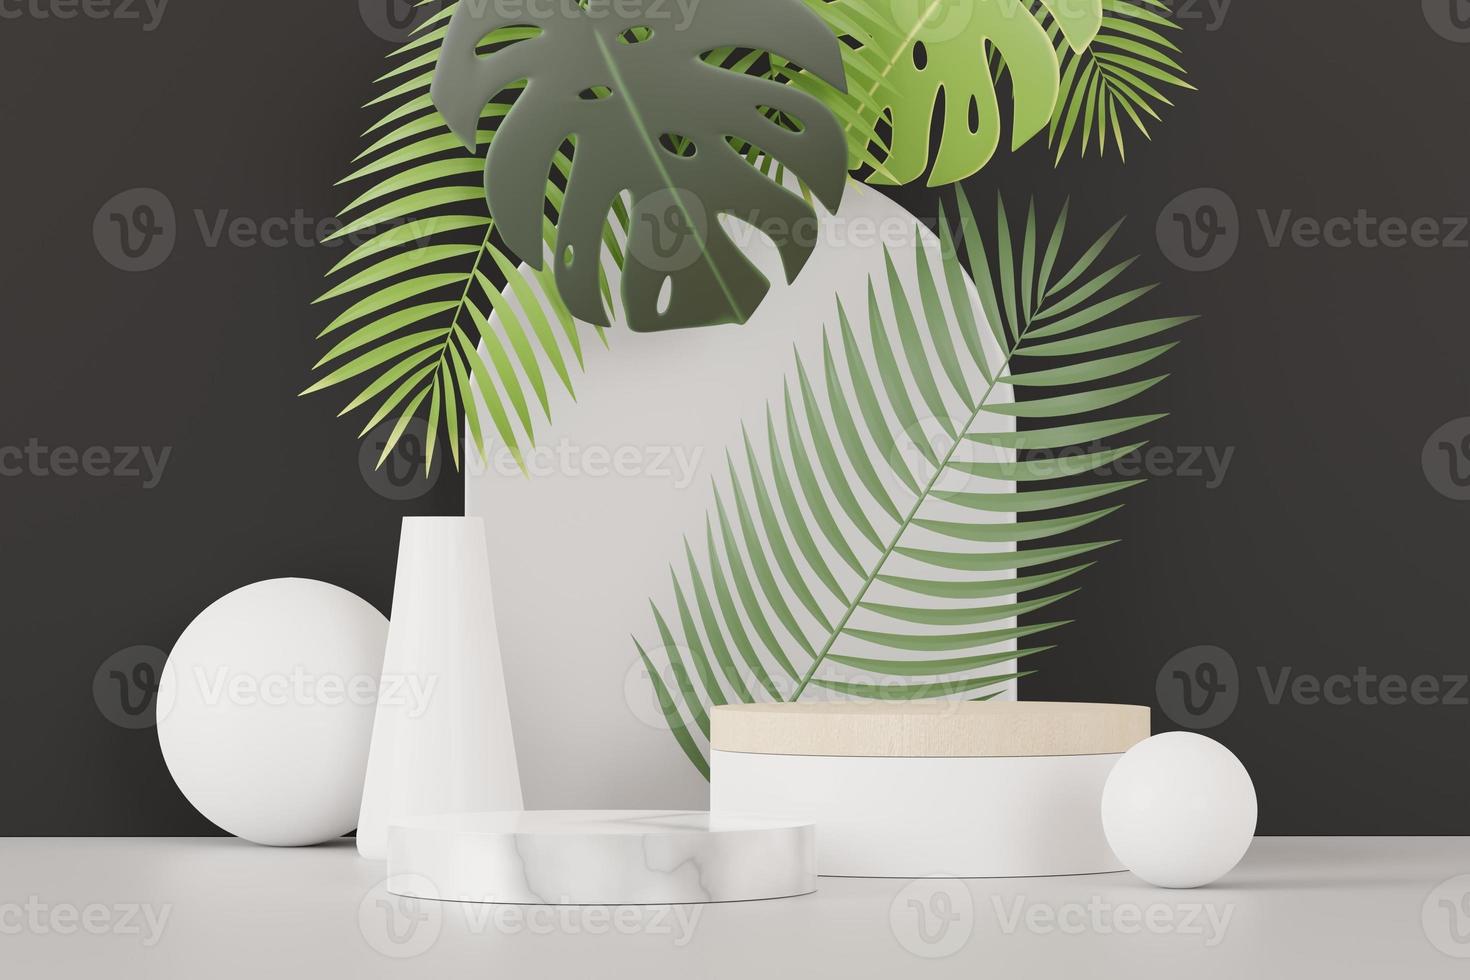 Representación 3d de la pantalla de podio de pedestal abstracto con hojas de monstera tropical. concepto de producto y promoción para publicidad. fondo natural verde. foto